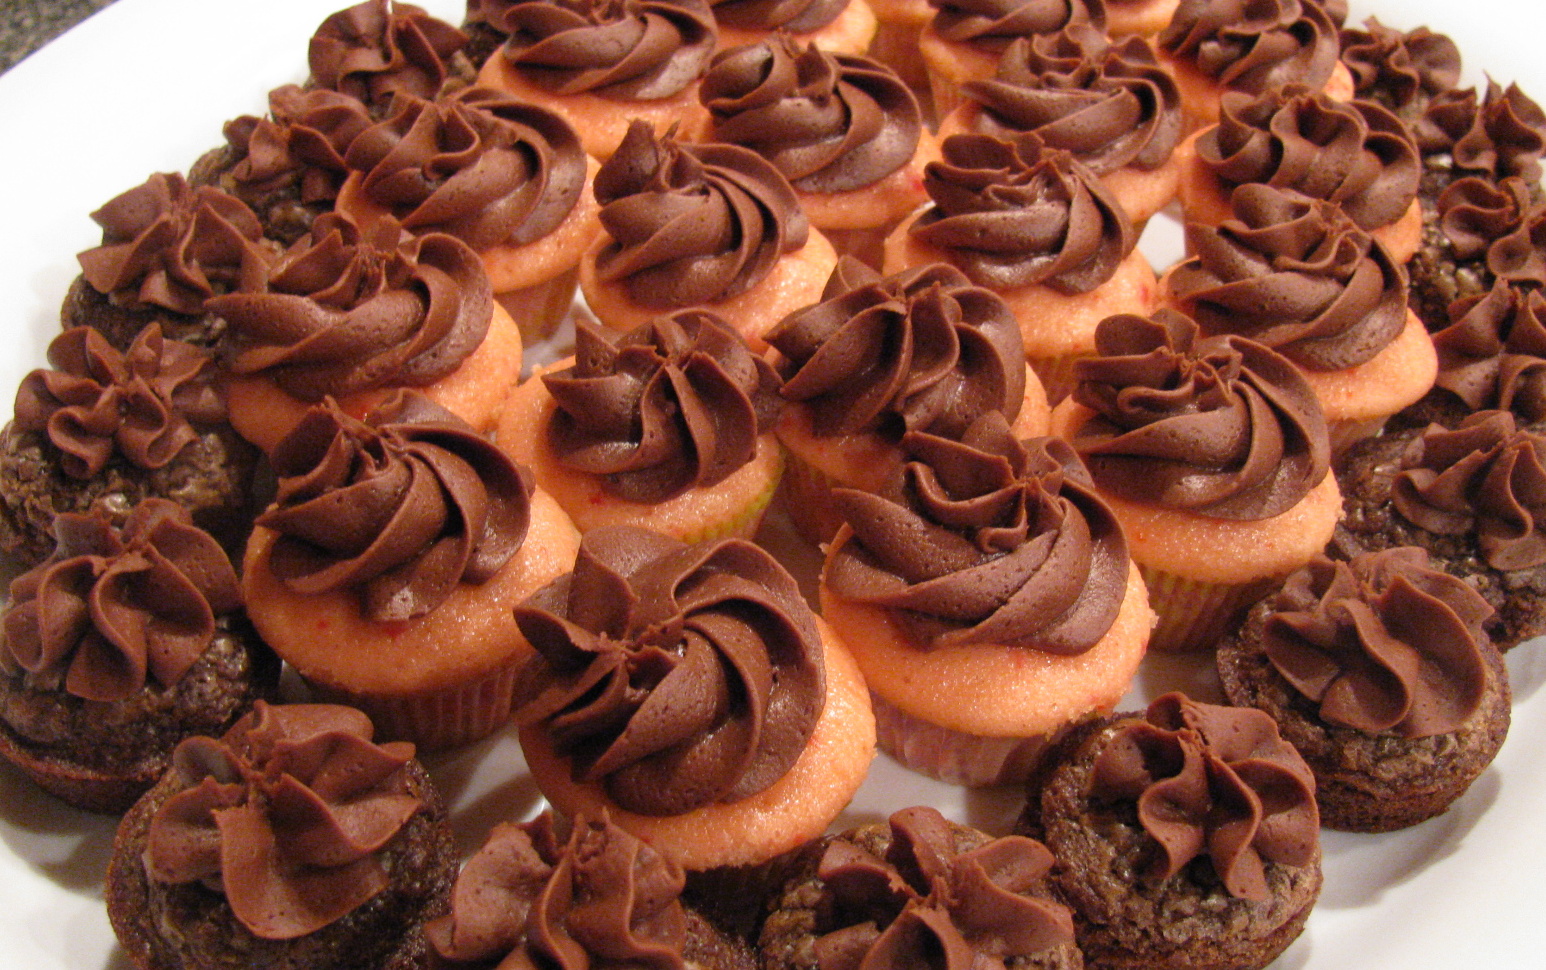 https://2.bp.blogspot.com/-eJ5Hce5o8F0/UKW5tXo_uhI/AAAAAAAAKCw/5yh-JaurM2s/s1600/brownie+bites+and+mini+cupcakes.JPG